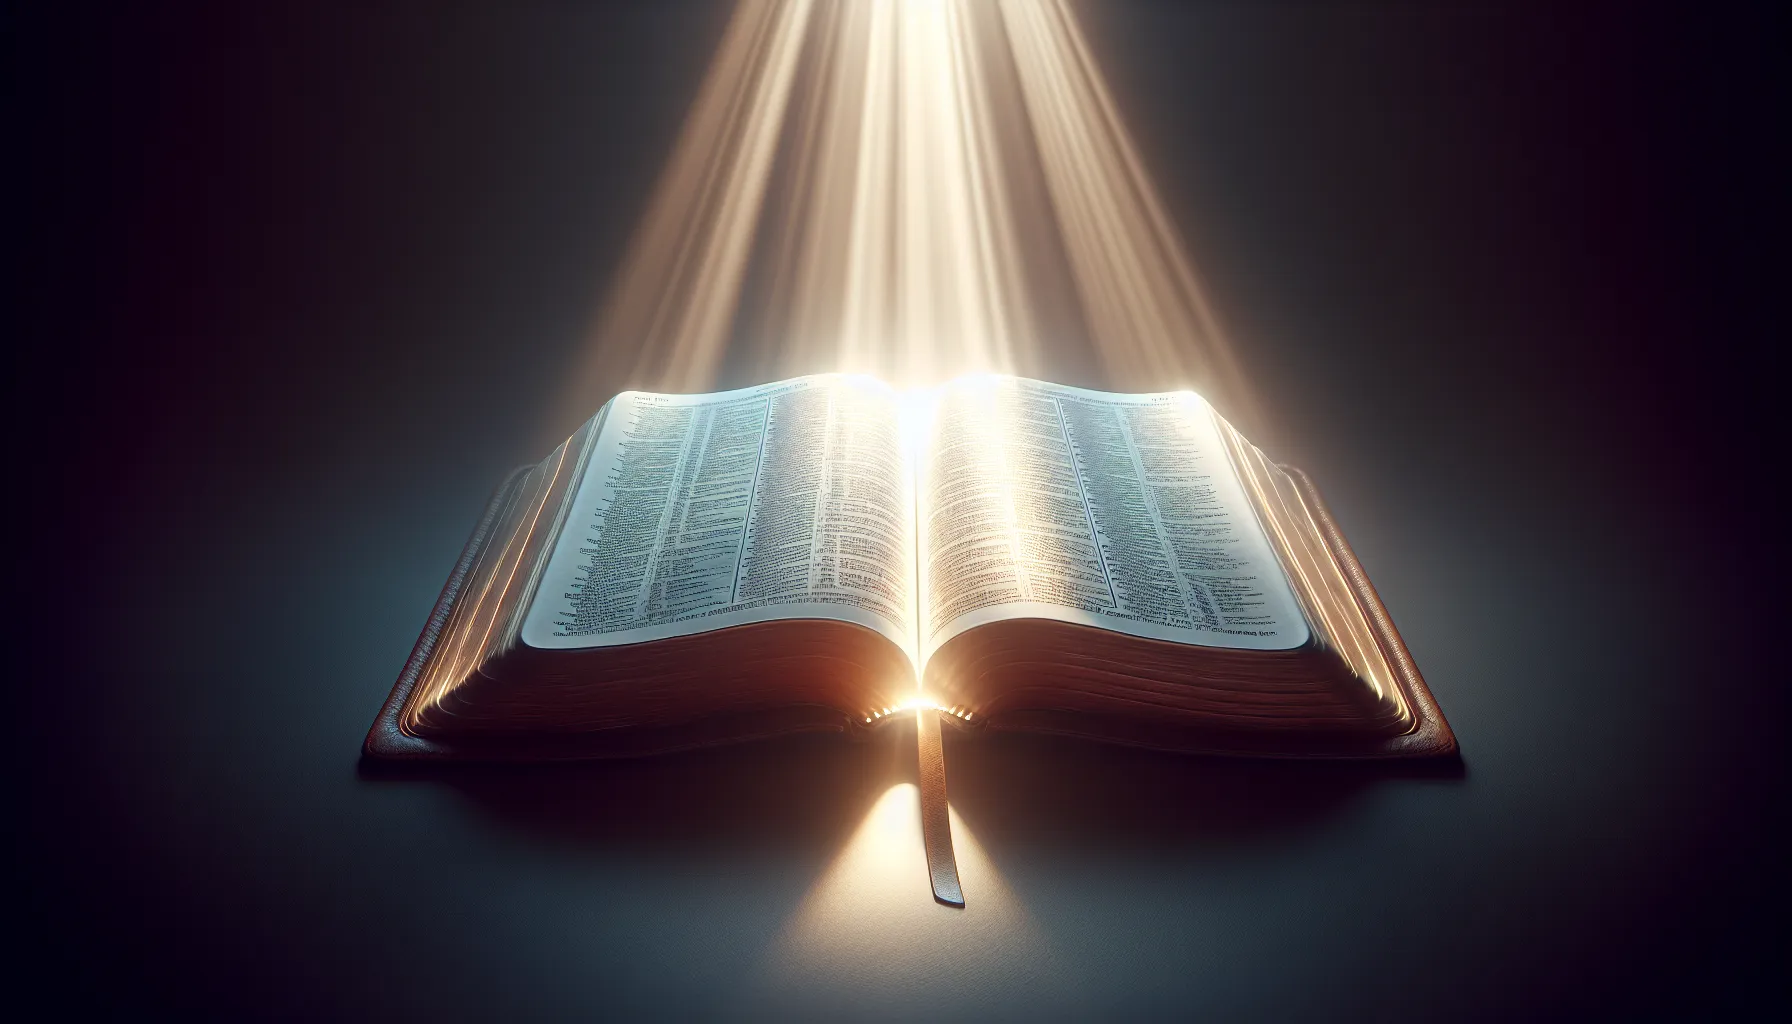 Imagen de una Biblia abierta con una luz brillante iluminando sus páginas